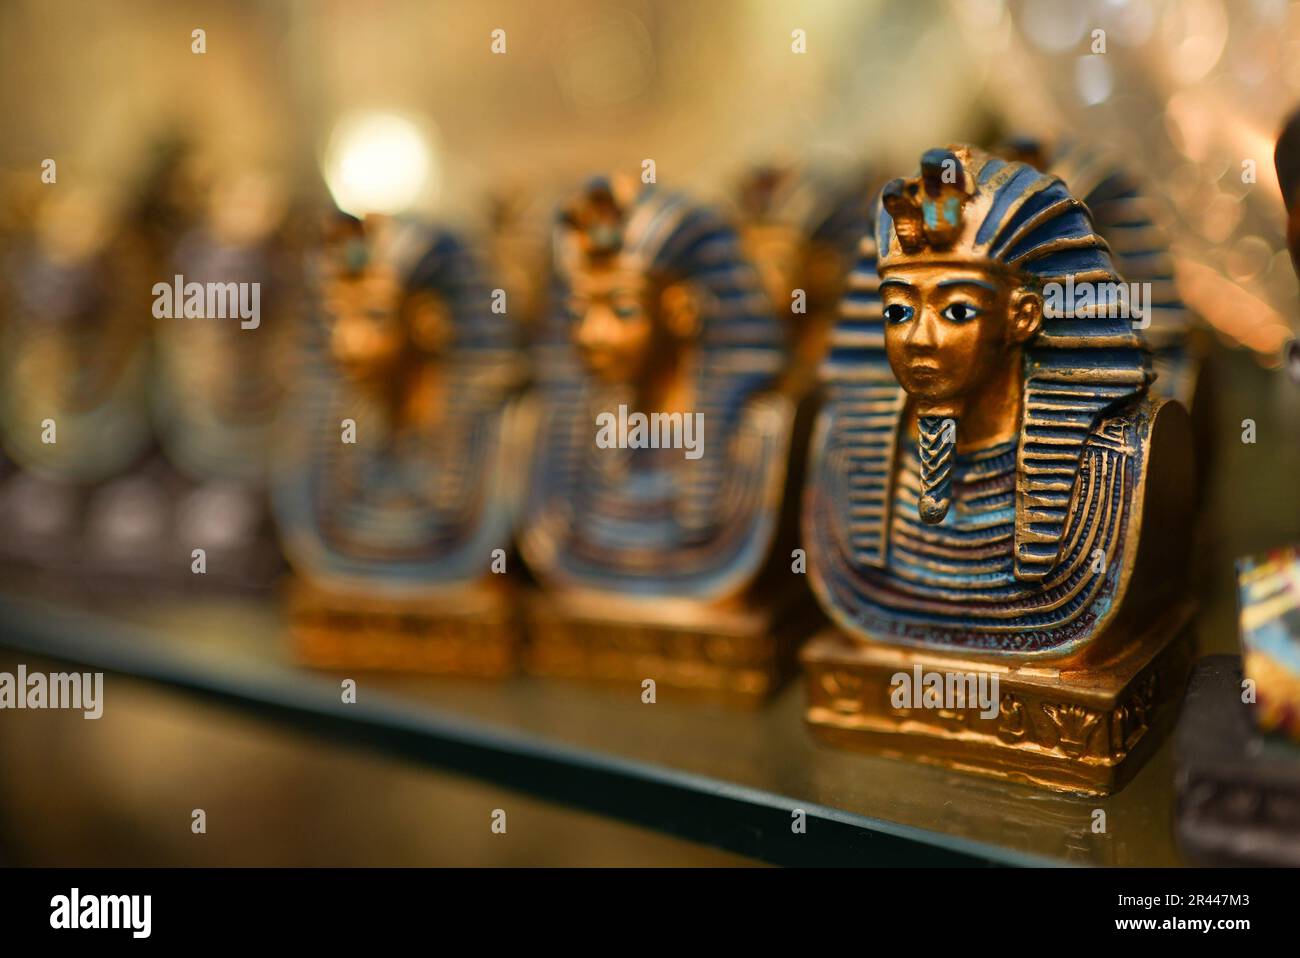 Piccolo souvenir Pharaoh figure giocattolo sullo scaffale Foto Stock